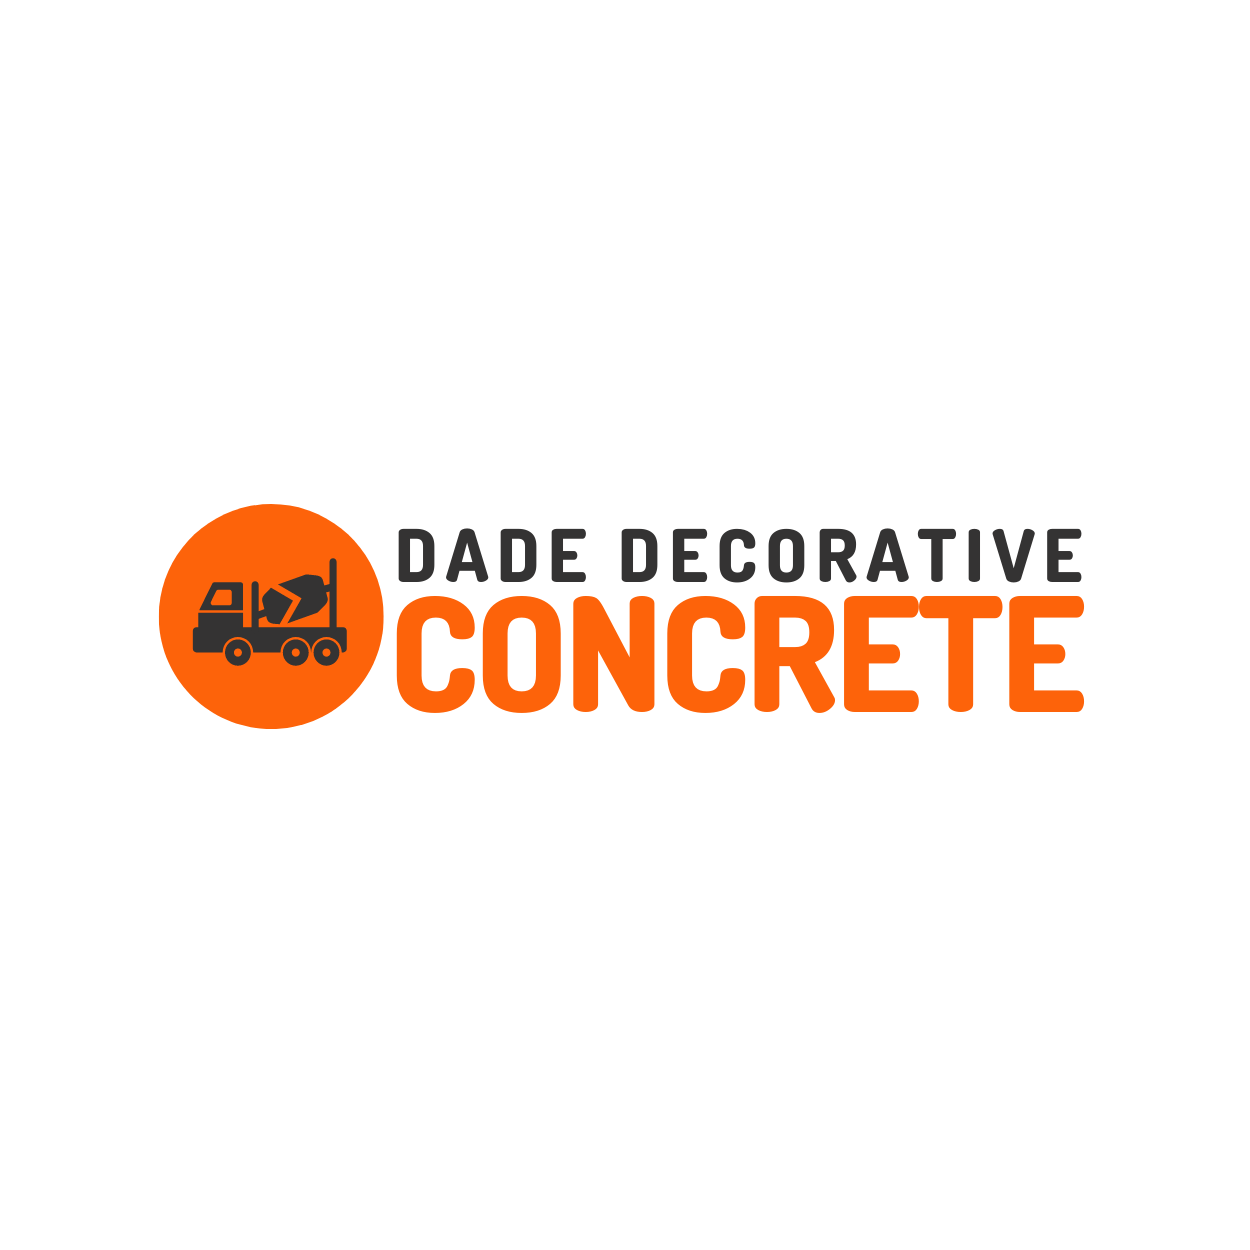 Dade-Decorative-Concrete-Logo-Square.png